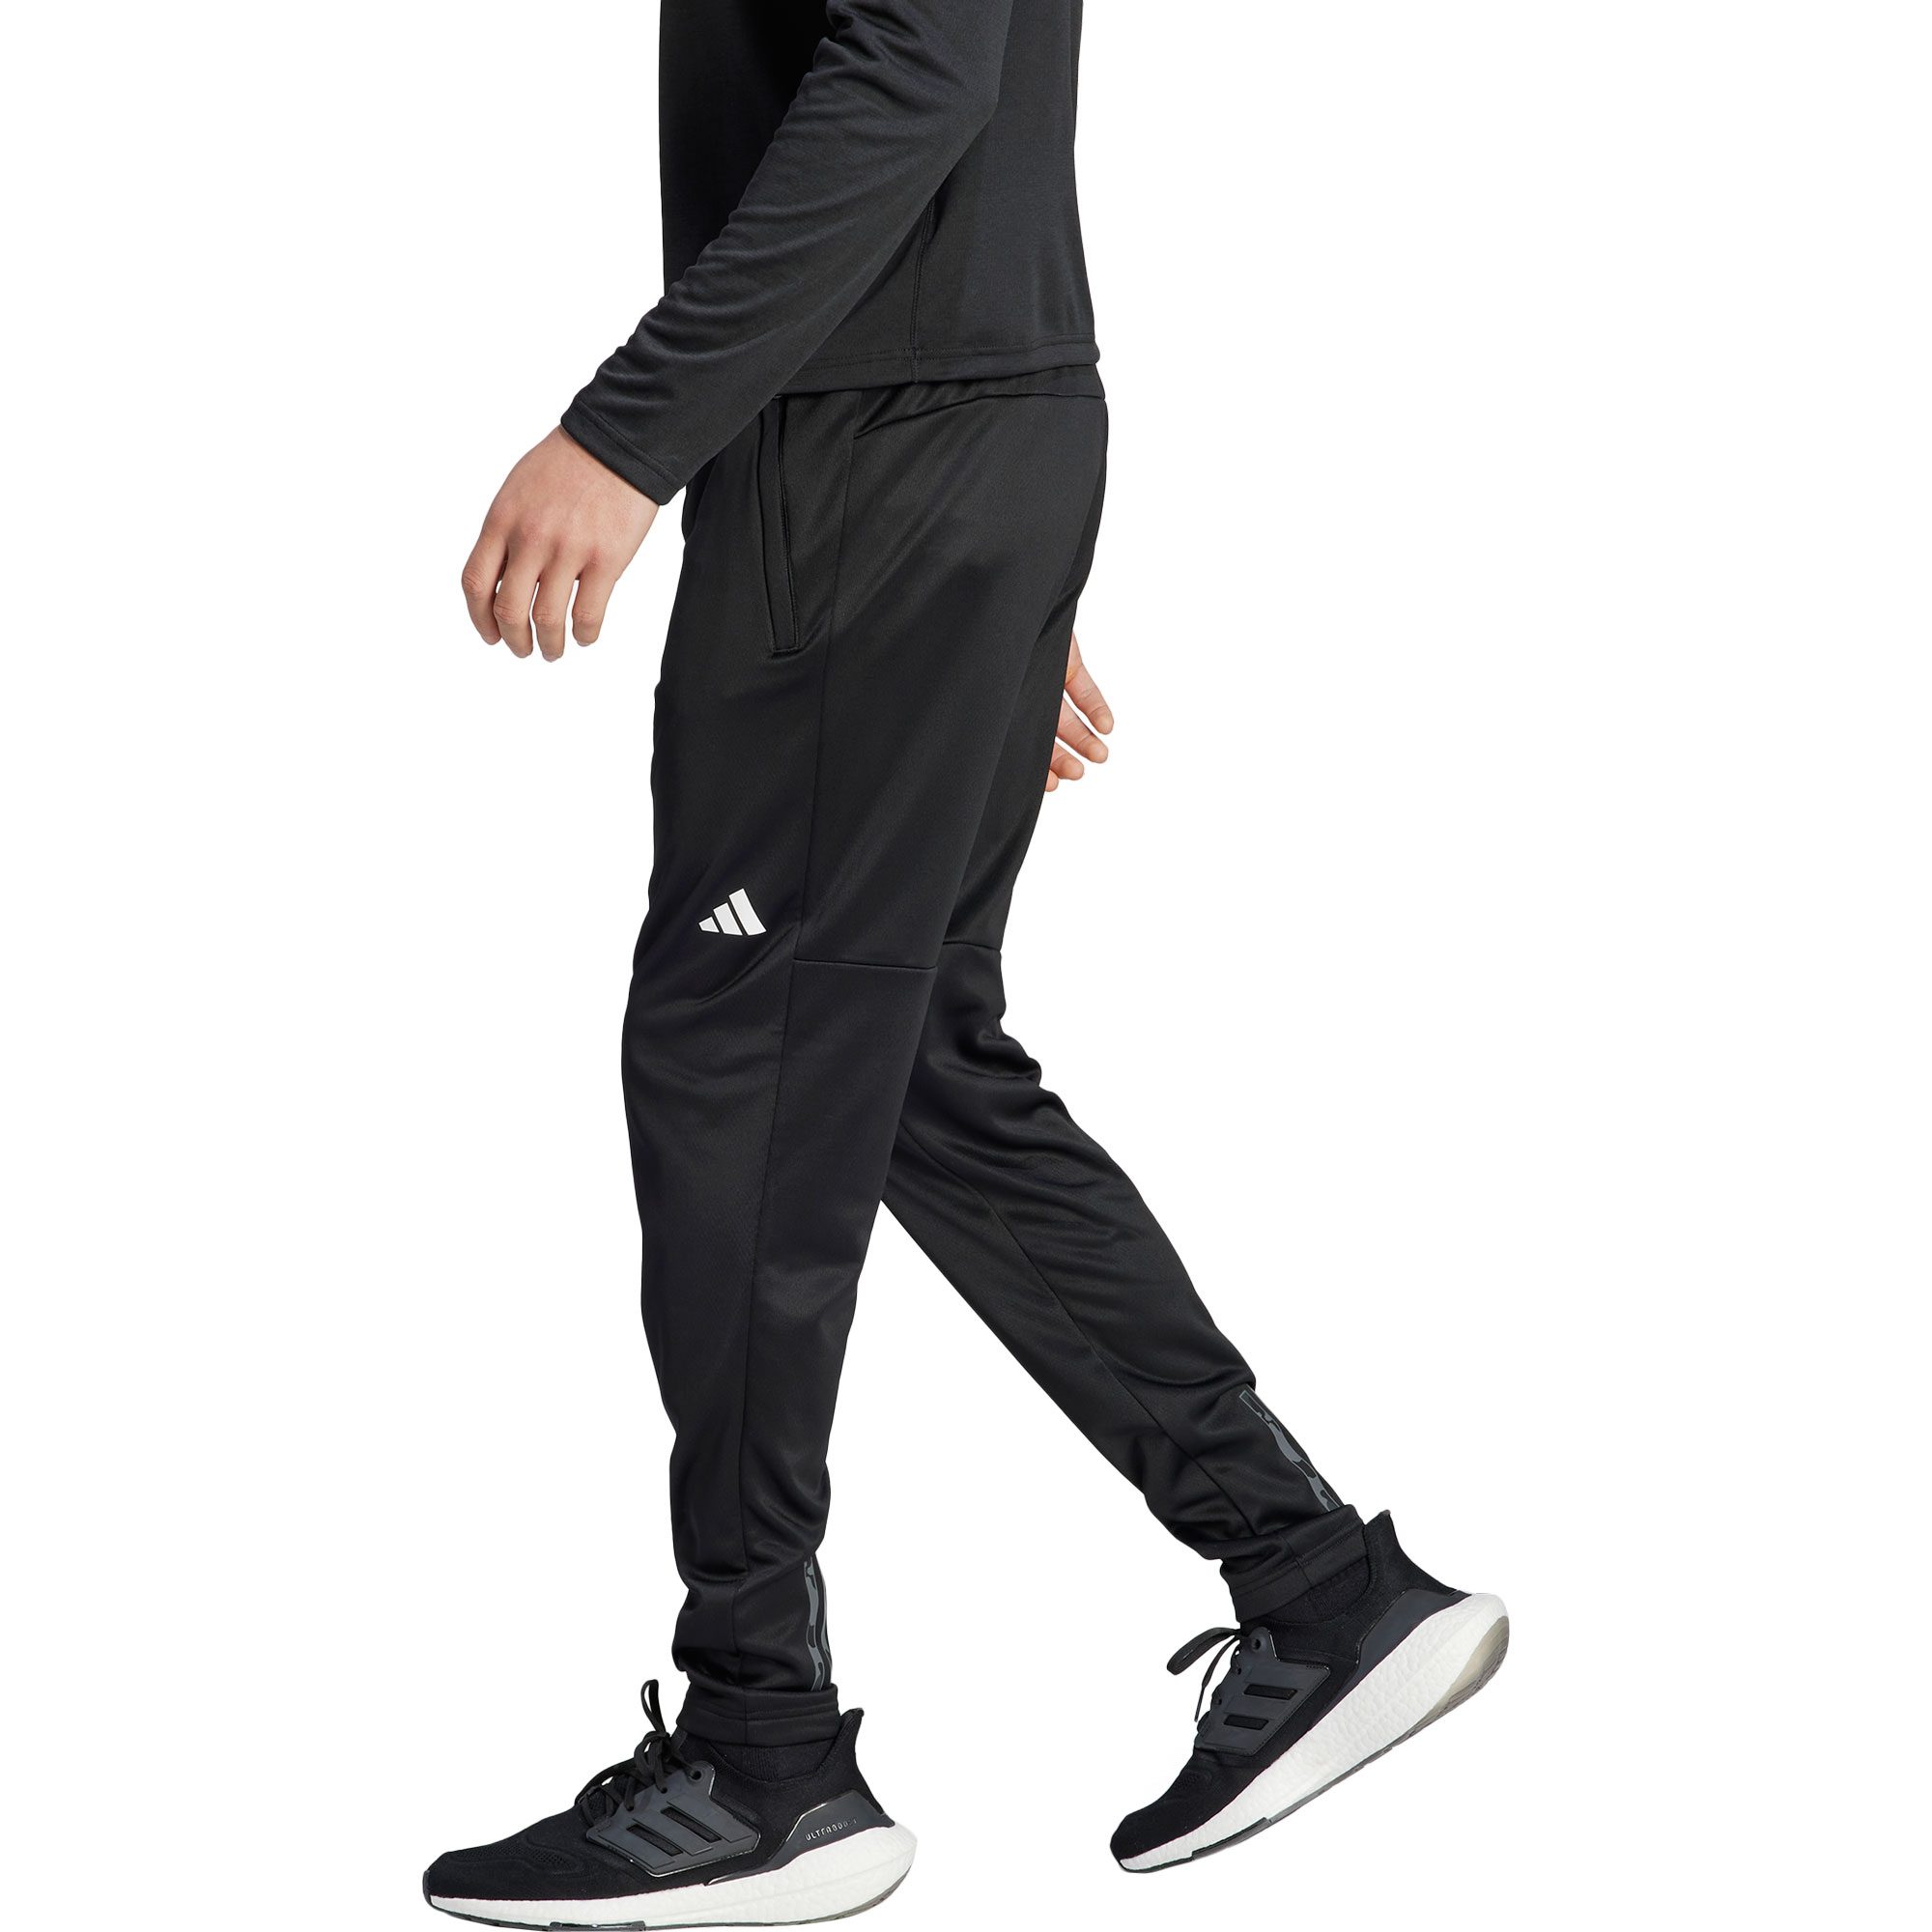 Sport adidas - Joggers Essentials Train Woven Seasonal Shop Men at Bittl Black